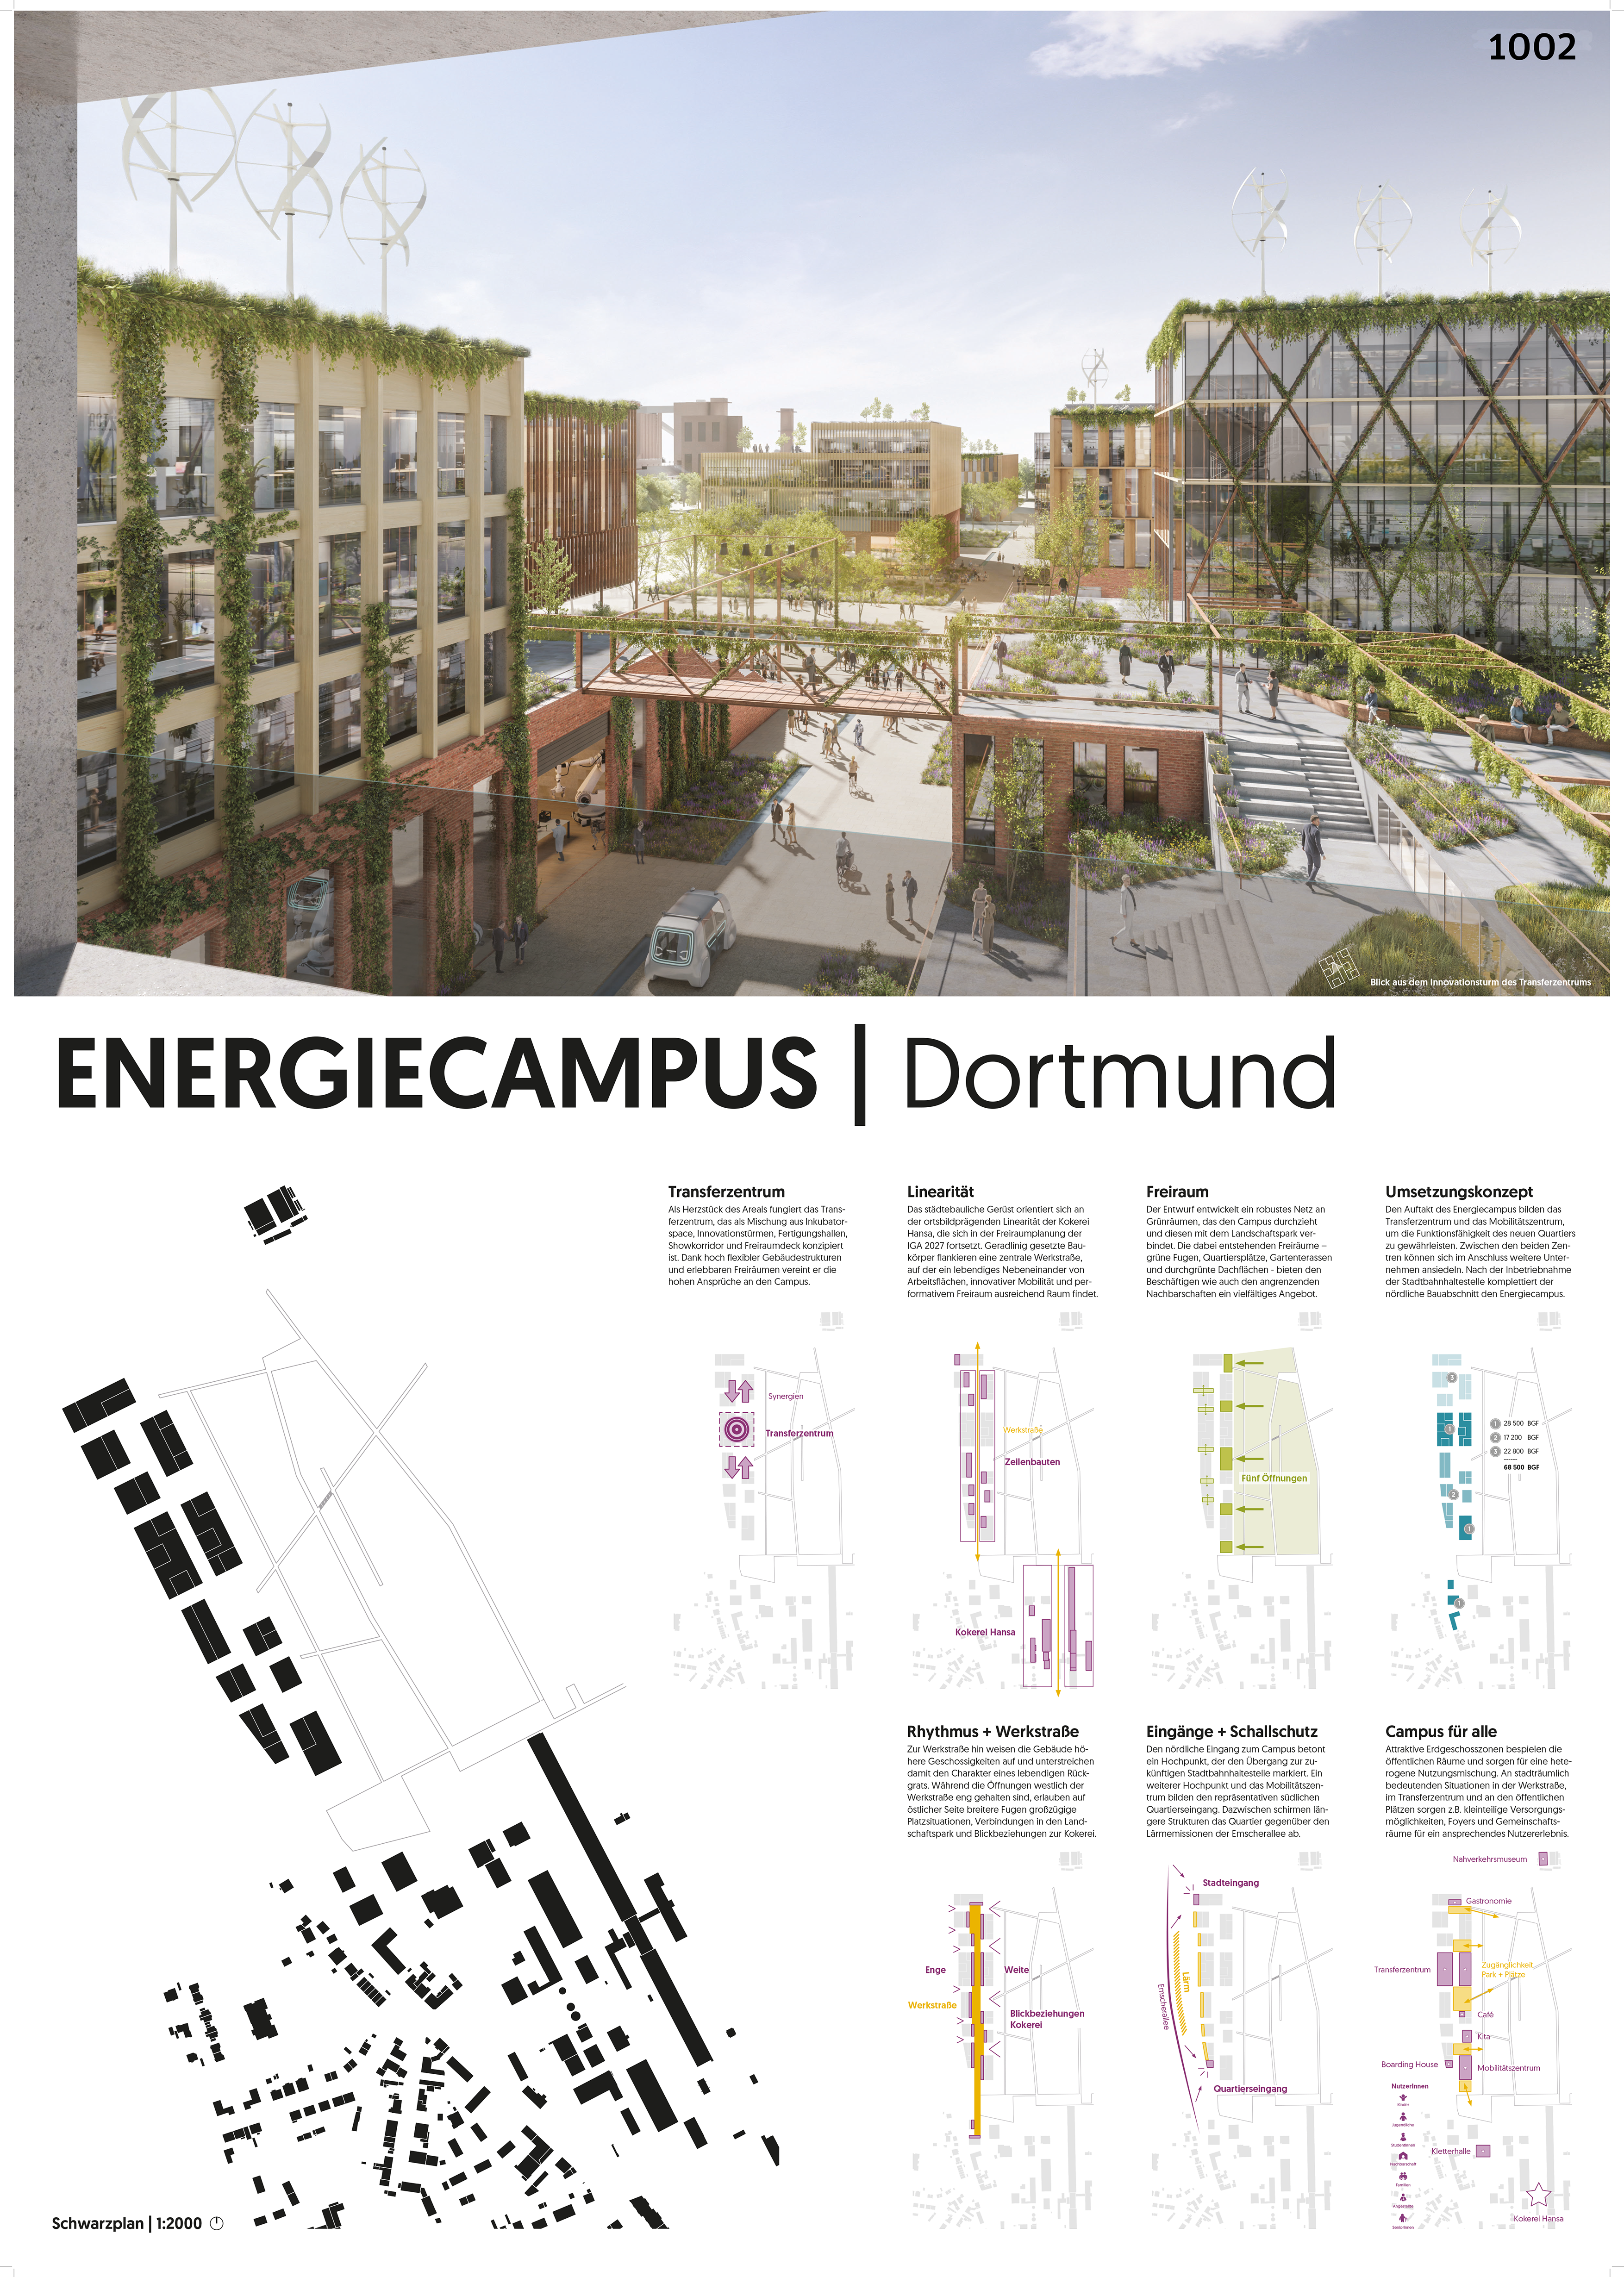 Wettbewerbsbeitrag Energiecampus Dortmund, Abbildung: asp Architekten